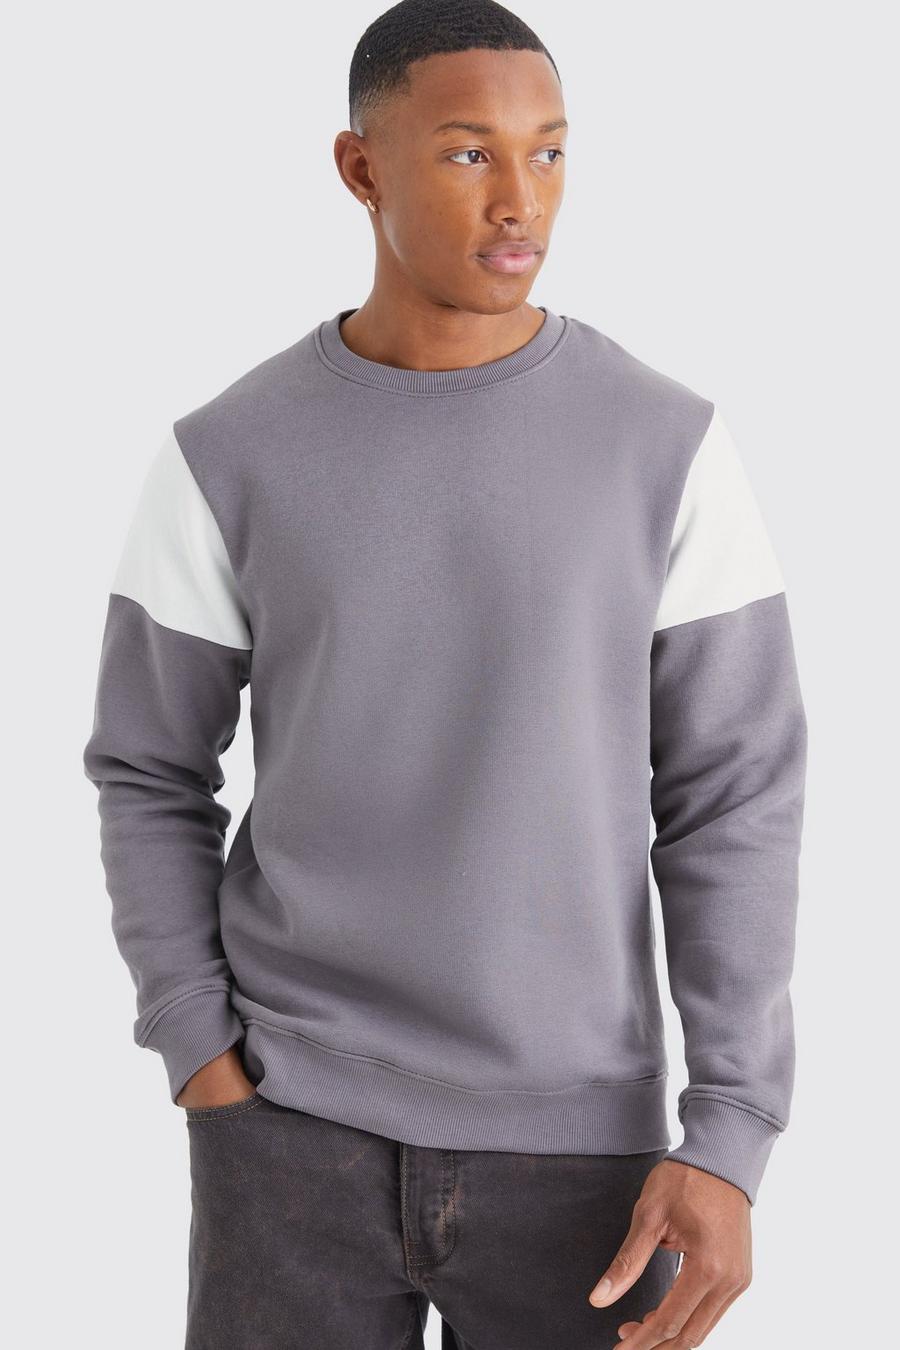 Charcoal grey Geometric Gg Bowling Shirt